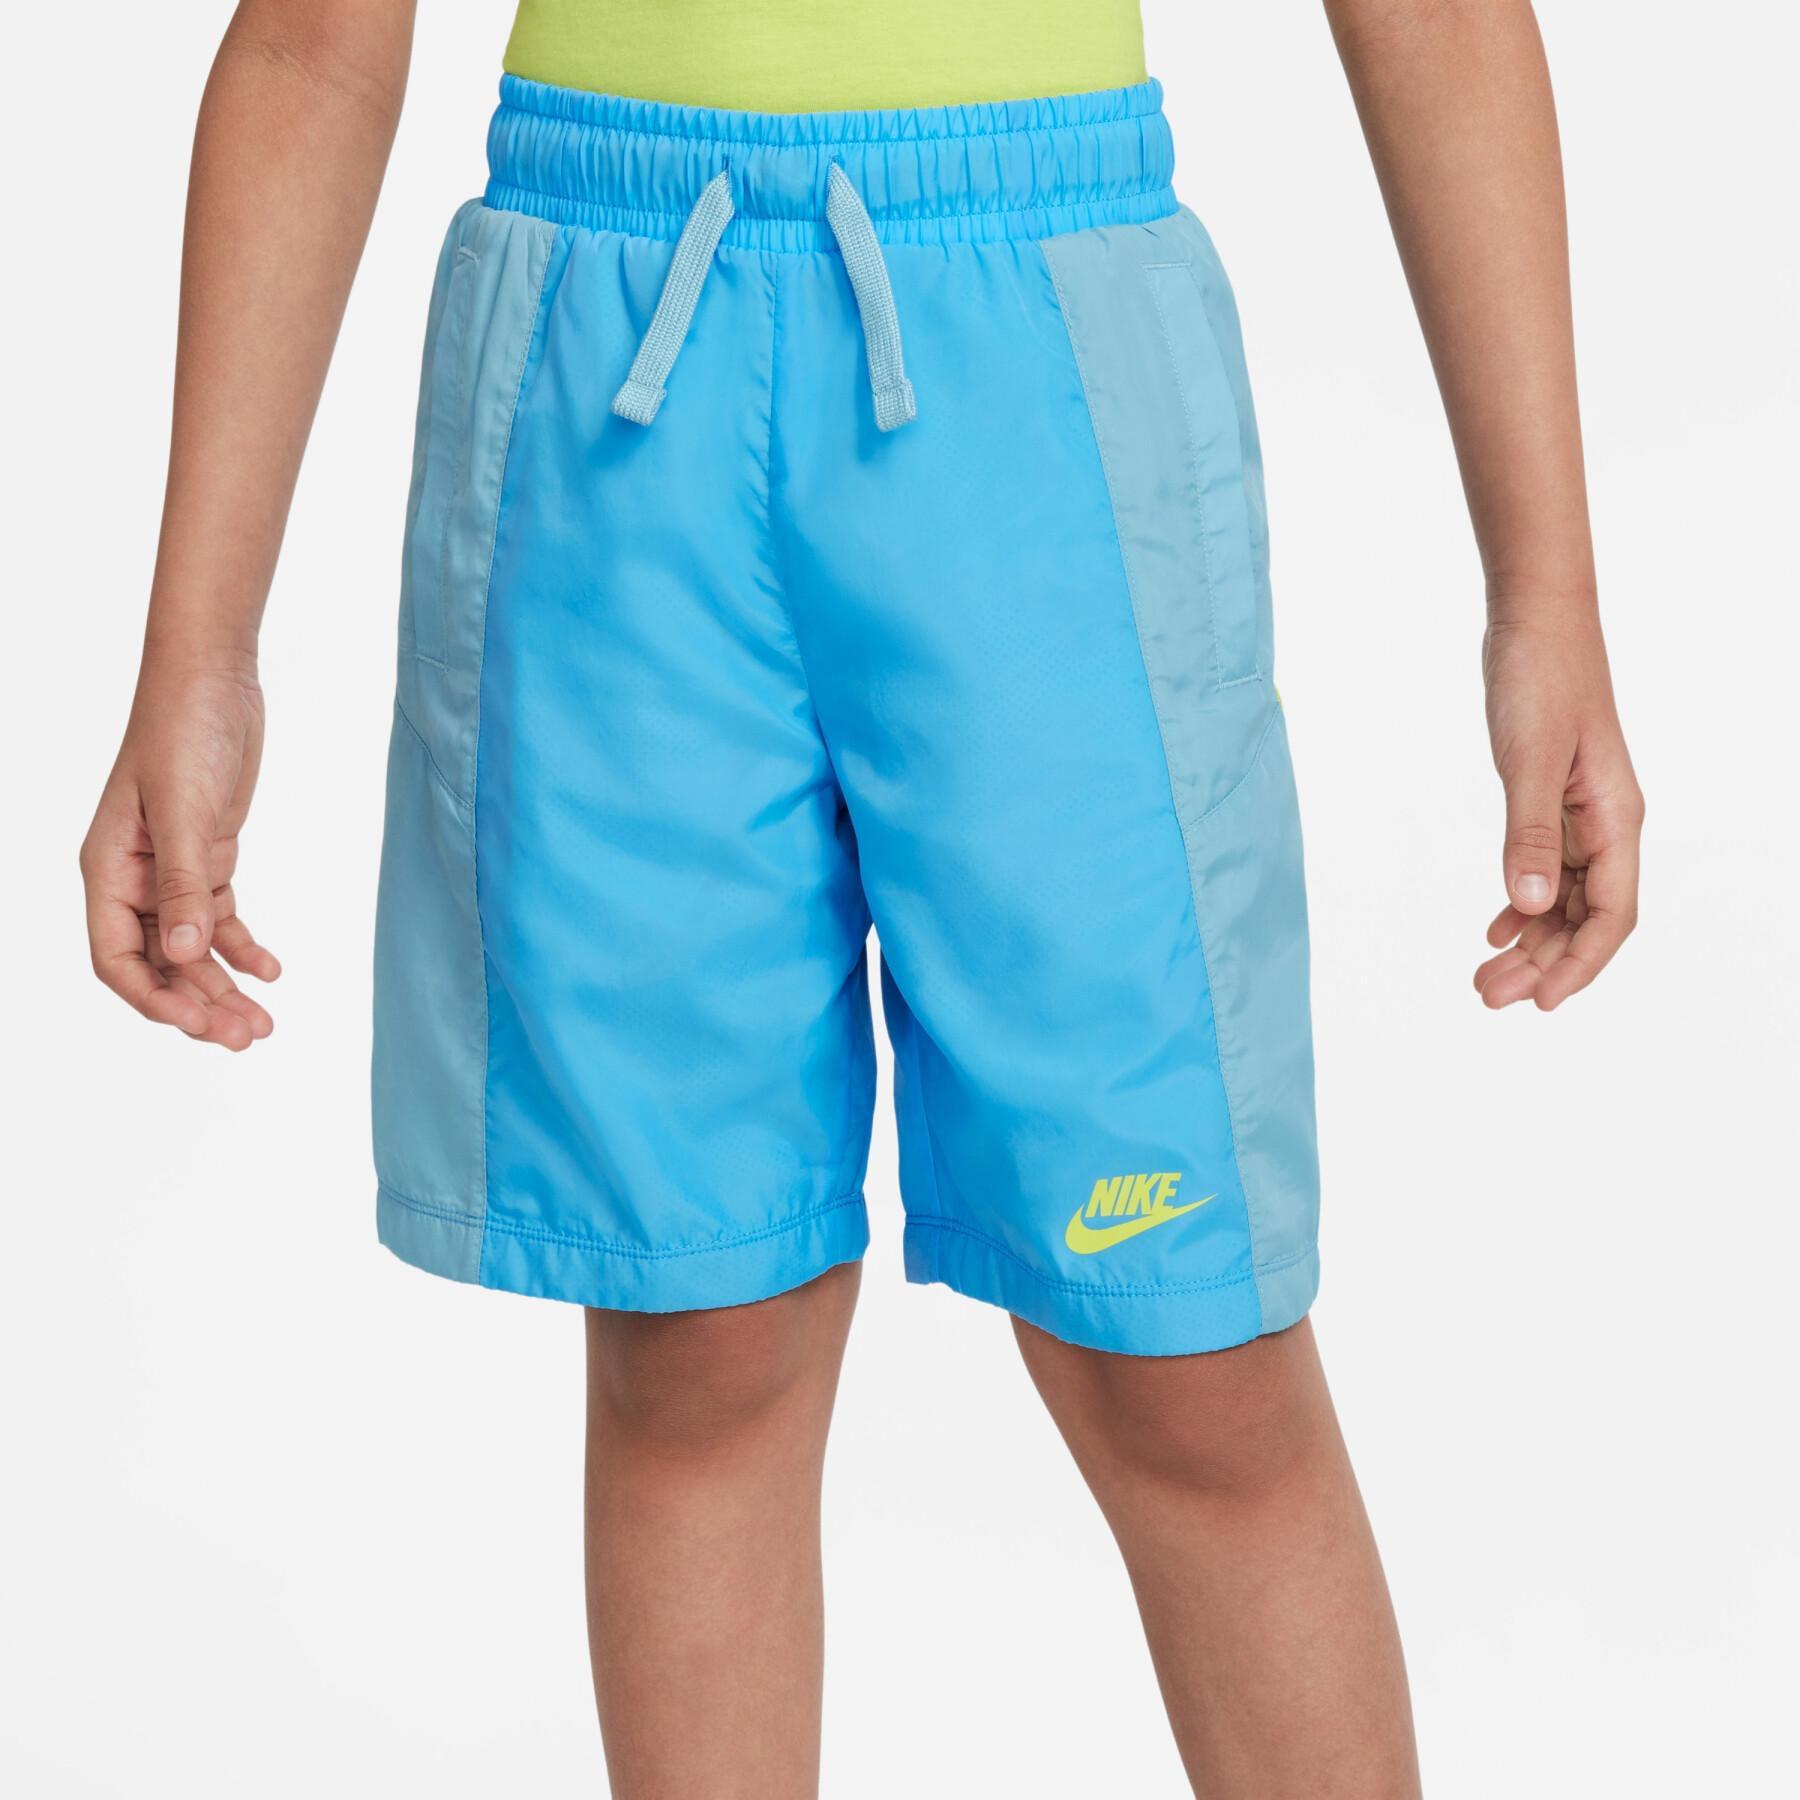 Children's shorts Nike Amplify